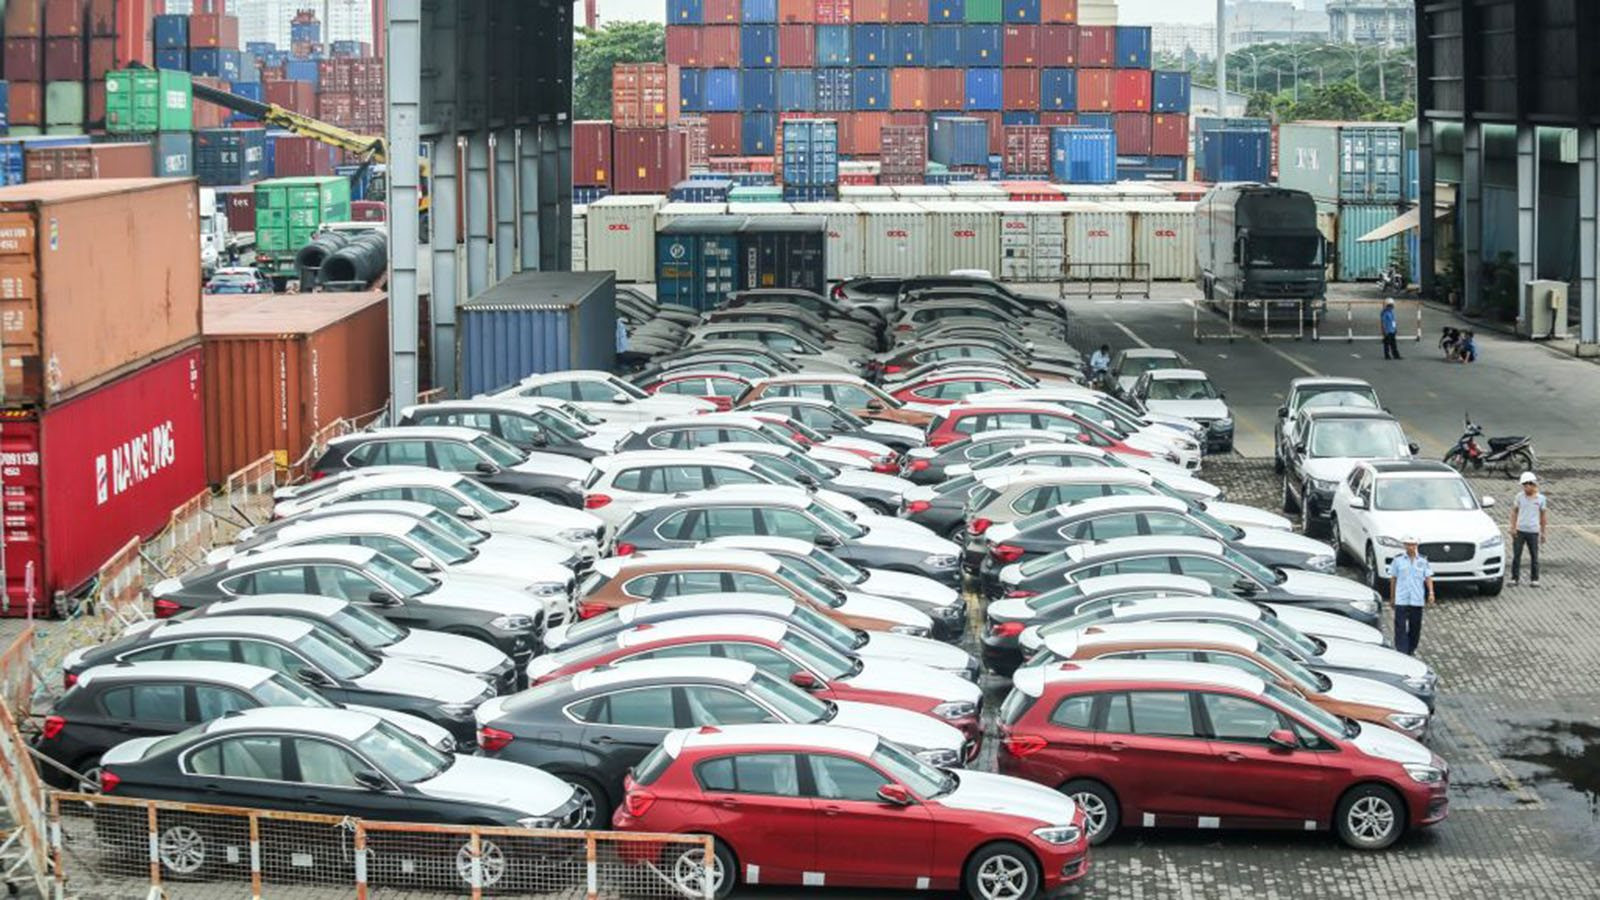 Trong một tháng, Việt Nam nhập khẩu hơn 12.000 chiếc ô tô, chủ yếu 9 chỗ trở xuống, một dòng xe không nhập chiếc nào - Ảnh 2.